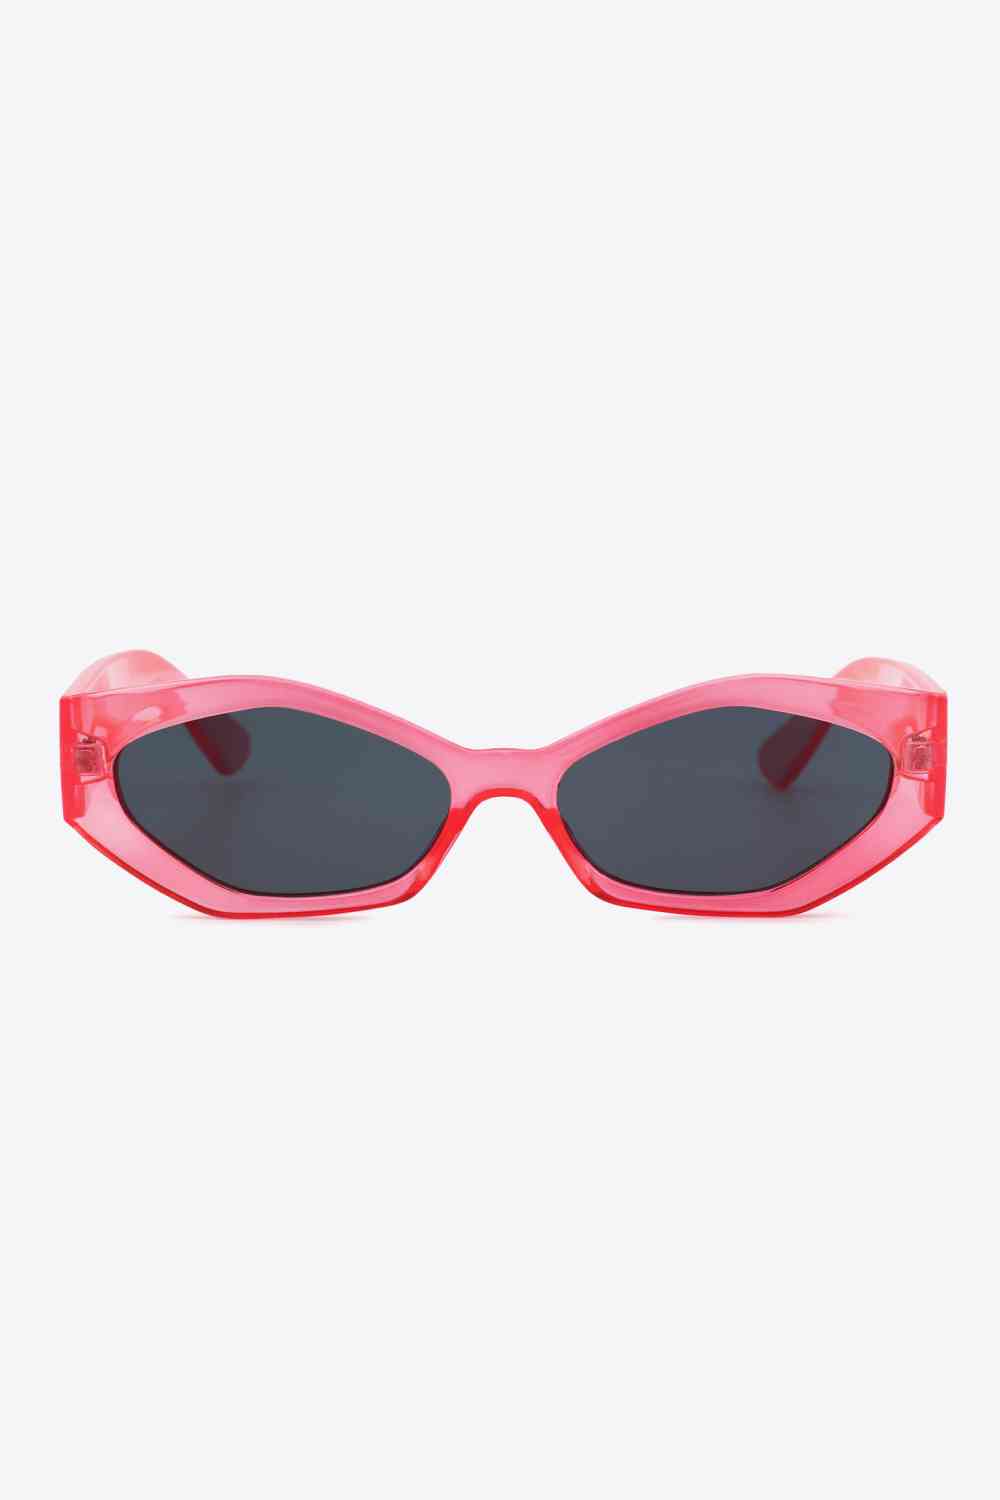 TEEK - Sautee Sis Sunglasses EYEGLASSES TEEK Trend   